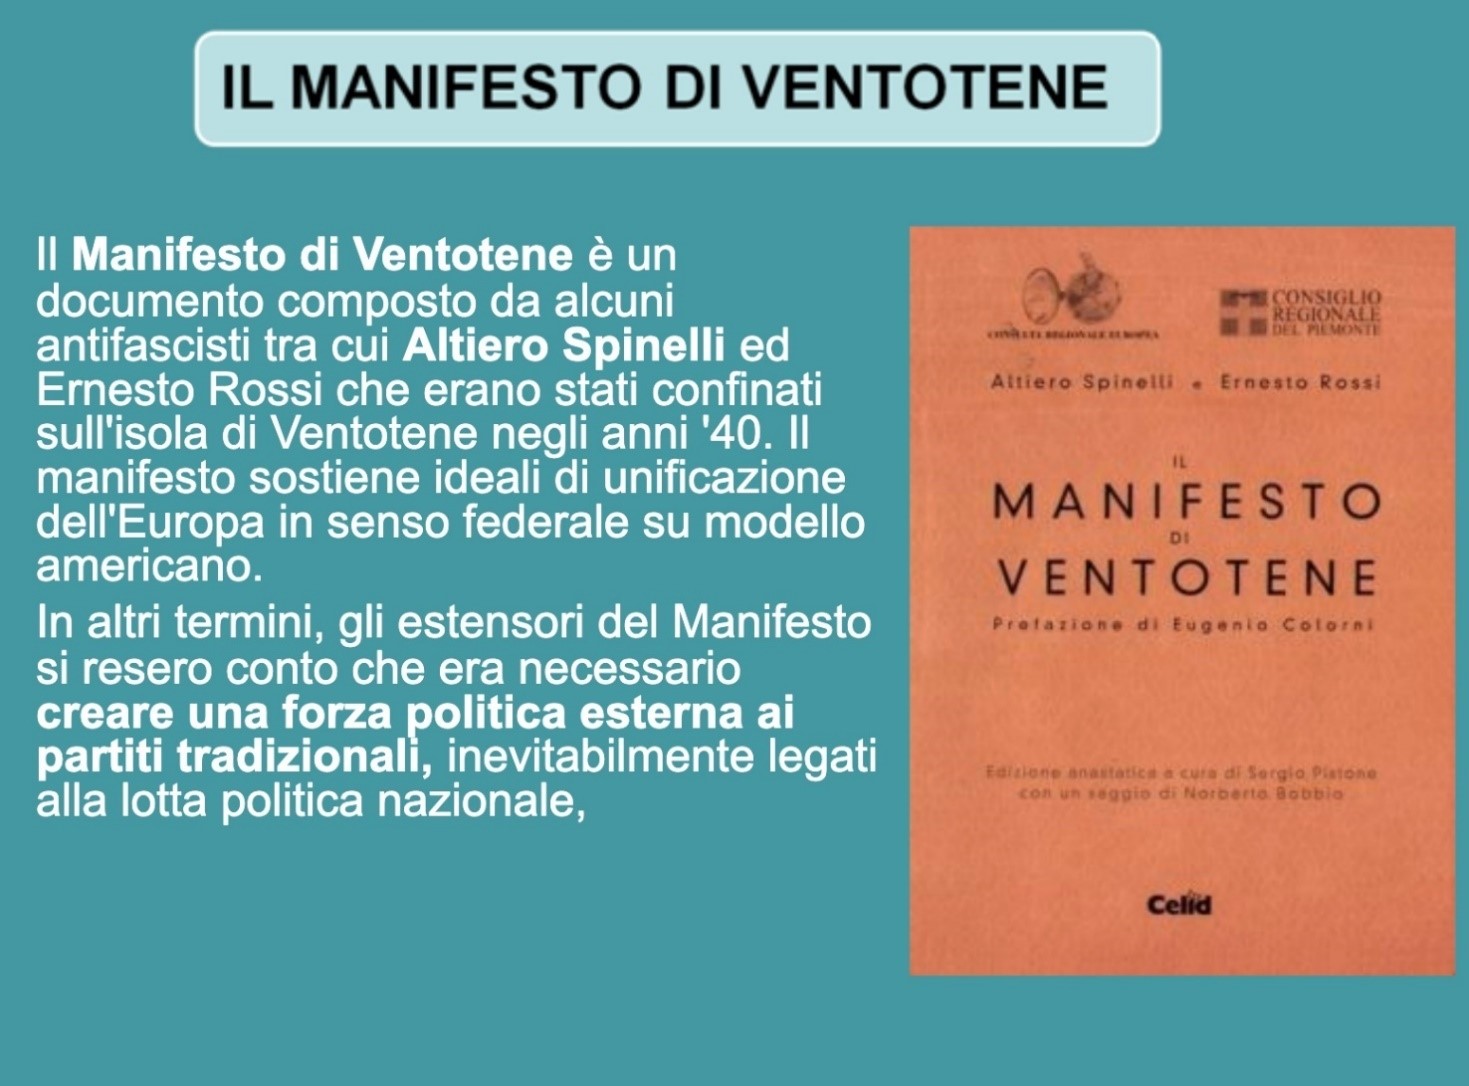 1940-1941: Manifesto di Ventotene, PER
                      UN’EUROPA LIBERA E UNITA